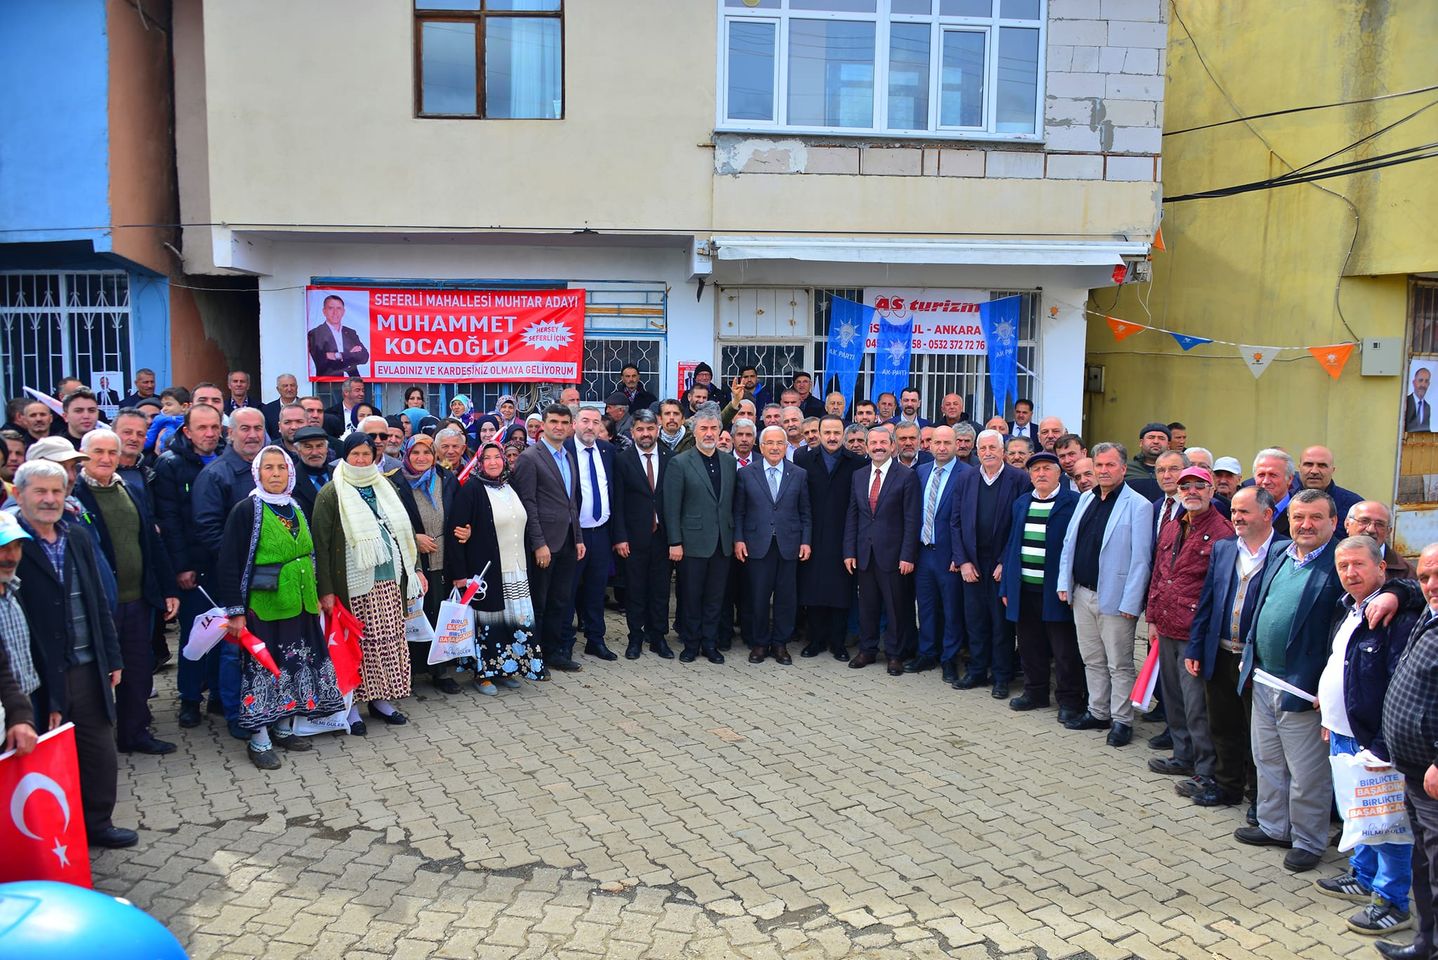 Ordu Büyükşehir Belediye Başkanı Dr. Mehmet Hilmi Güler, Seferli Mahallesi'nde önemli ziyaretlerde bulundu.